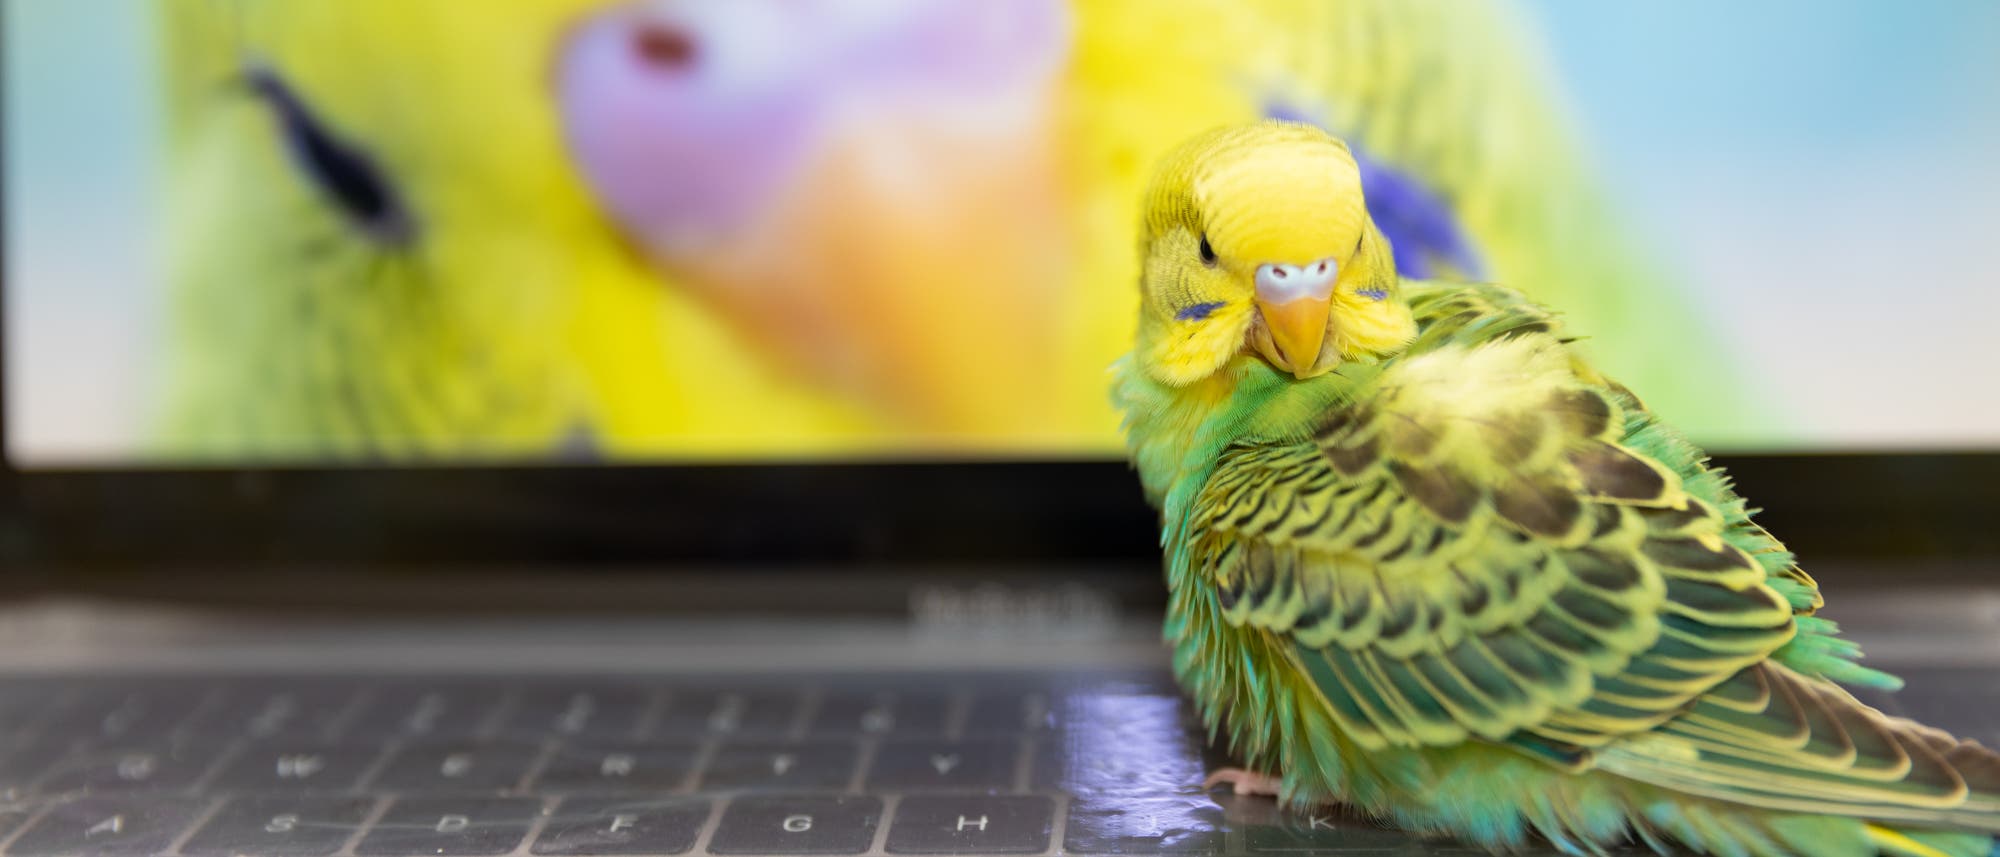 Ein gelbgrüner Wellensittich sitzt auf einer Notebook-Tastatur. Auf dem Monitor sieht man den deutlich vergrößerten, gelben Kopf eines weiteren Wellensittichs